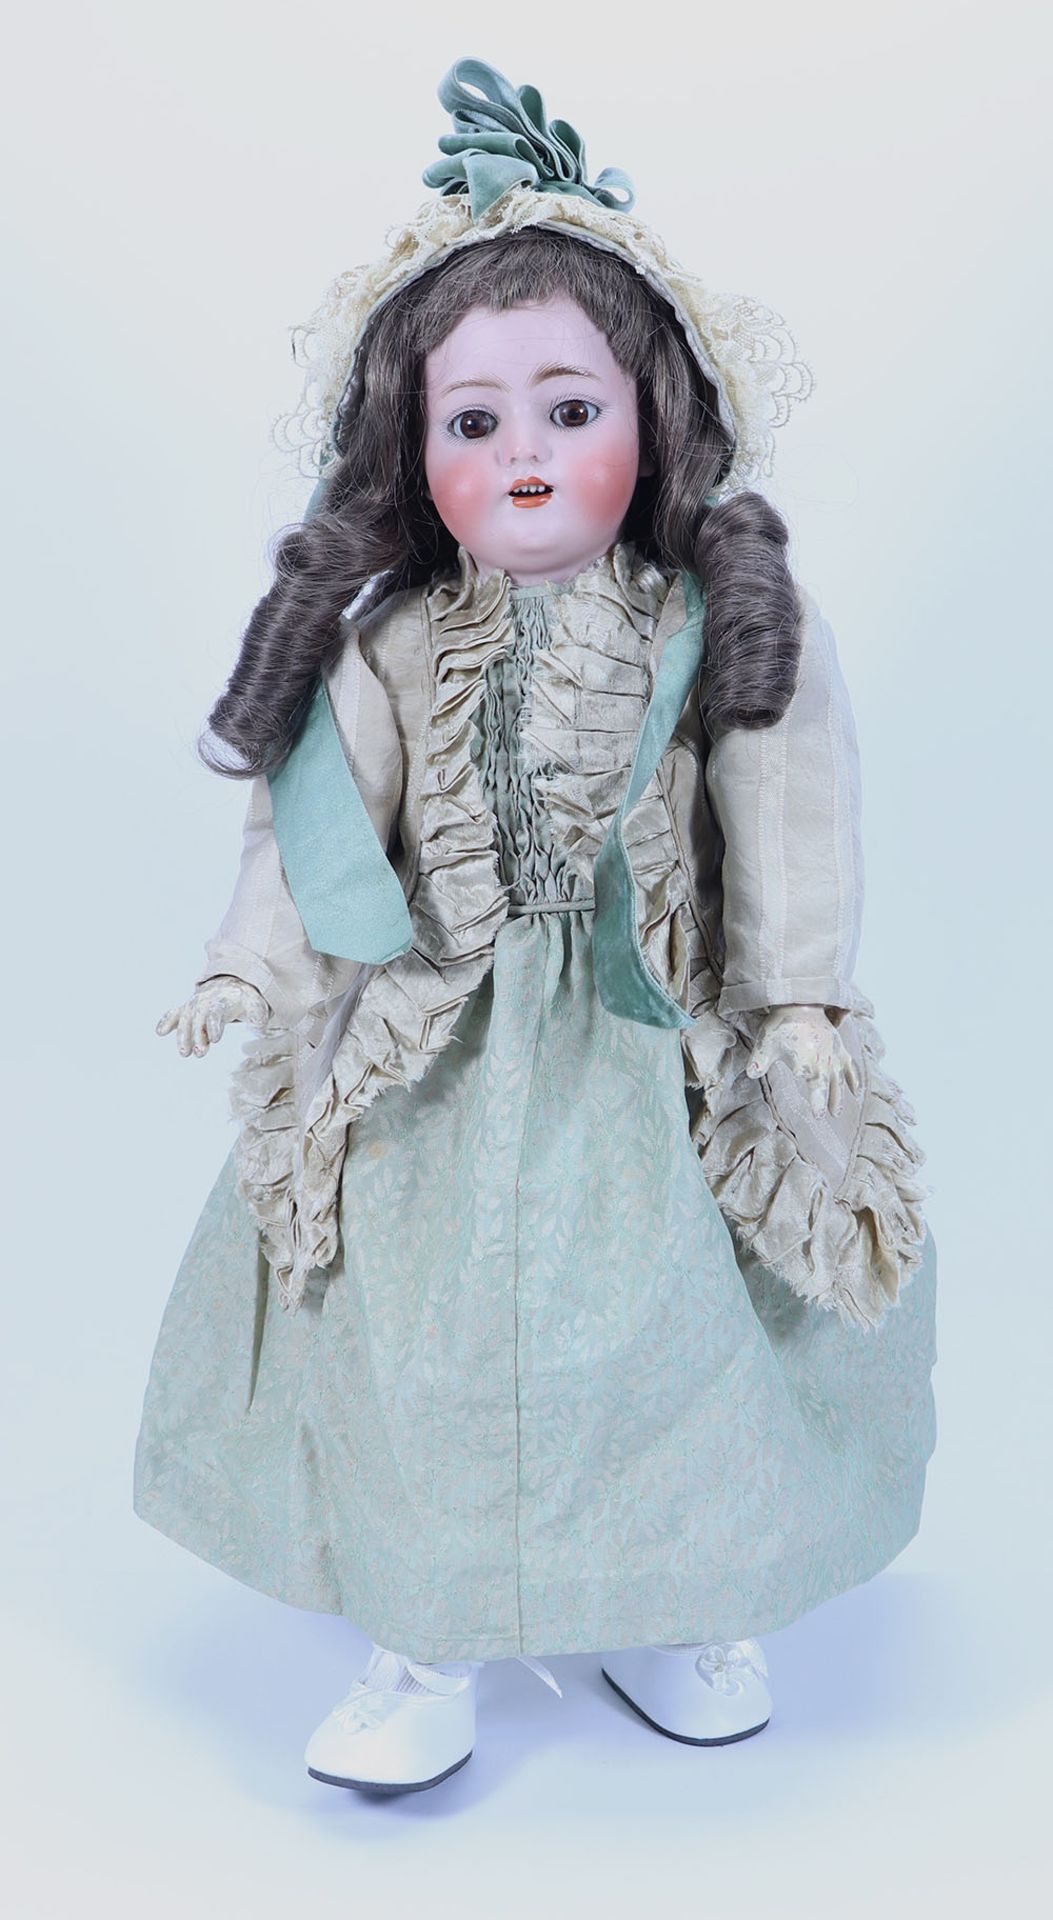 A Simon & Halbig 1078 bisque head doll, German circa 1910,